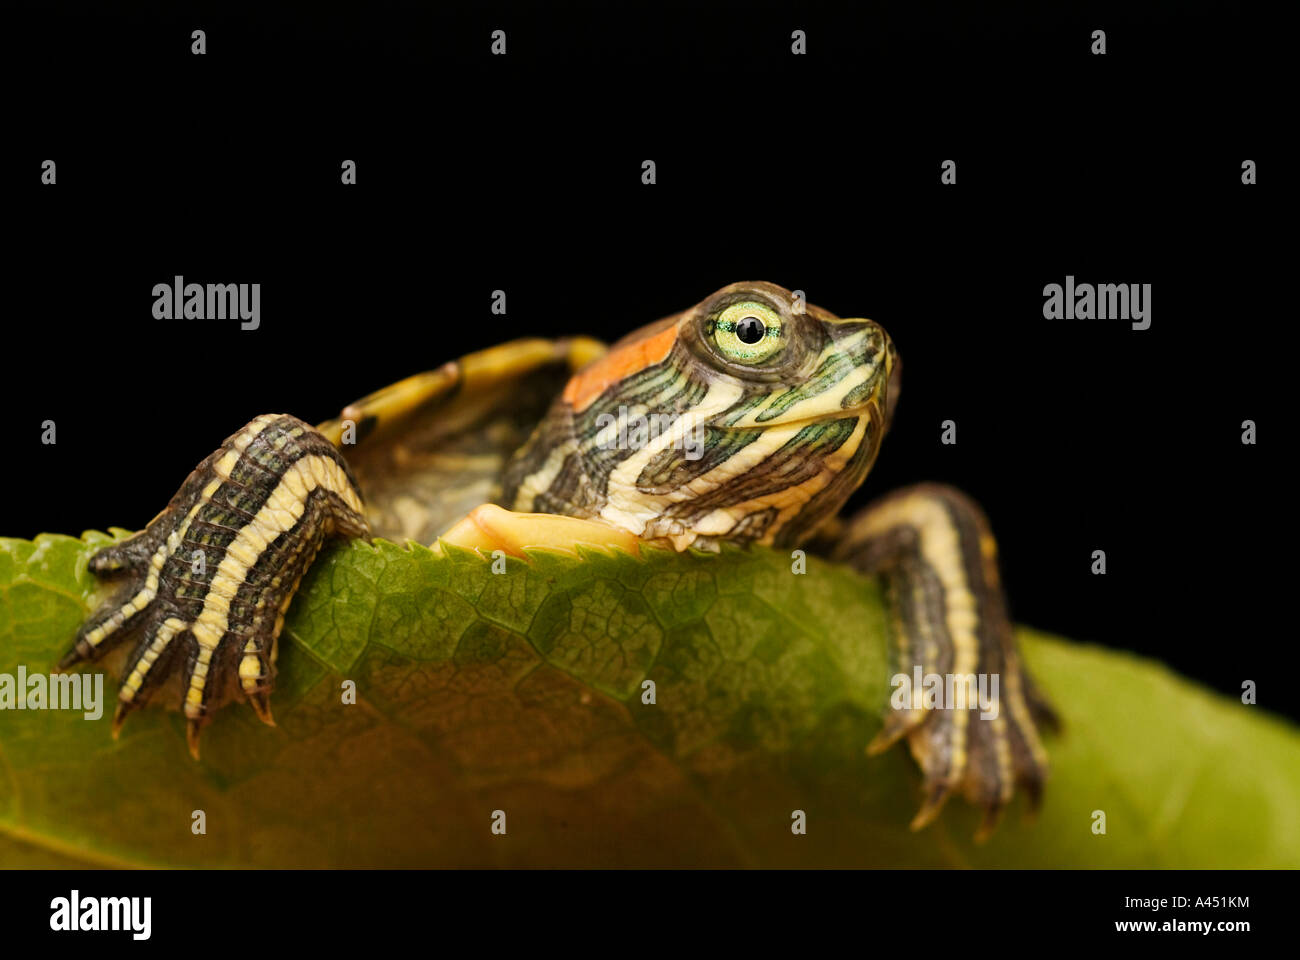 Turtle on leaf Stock Photo